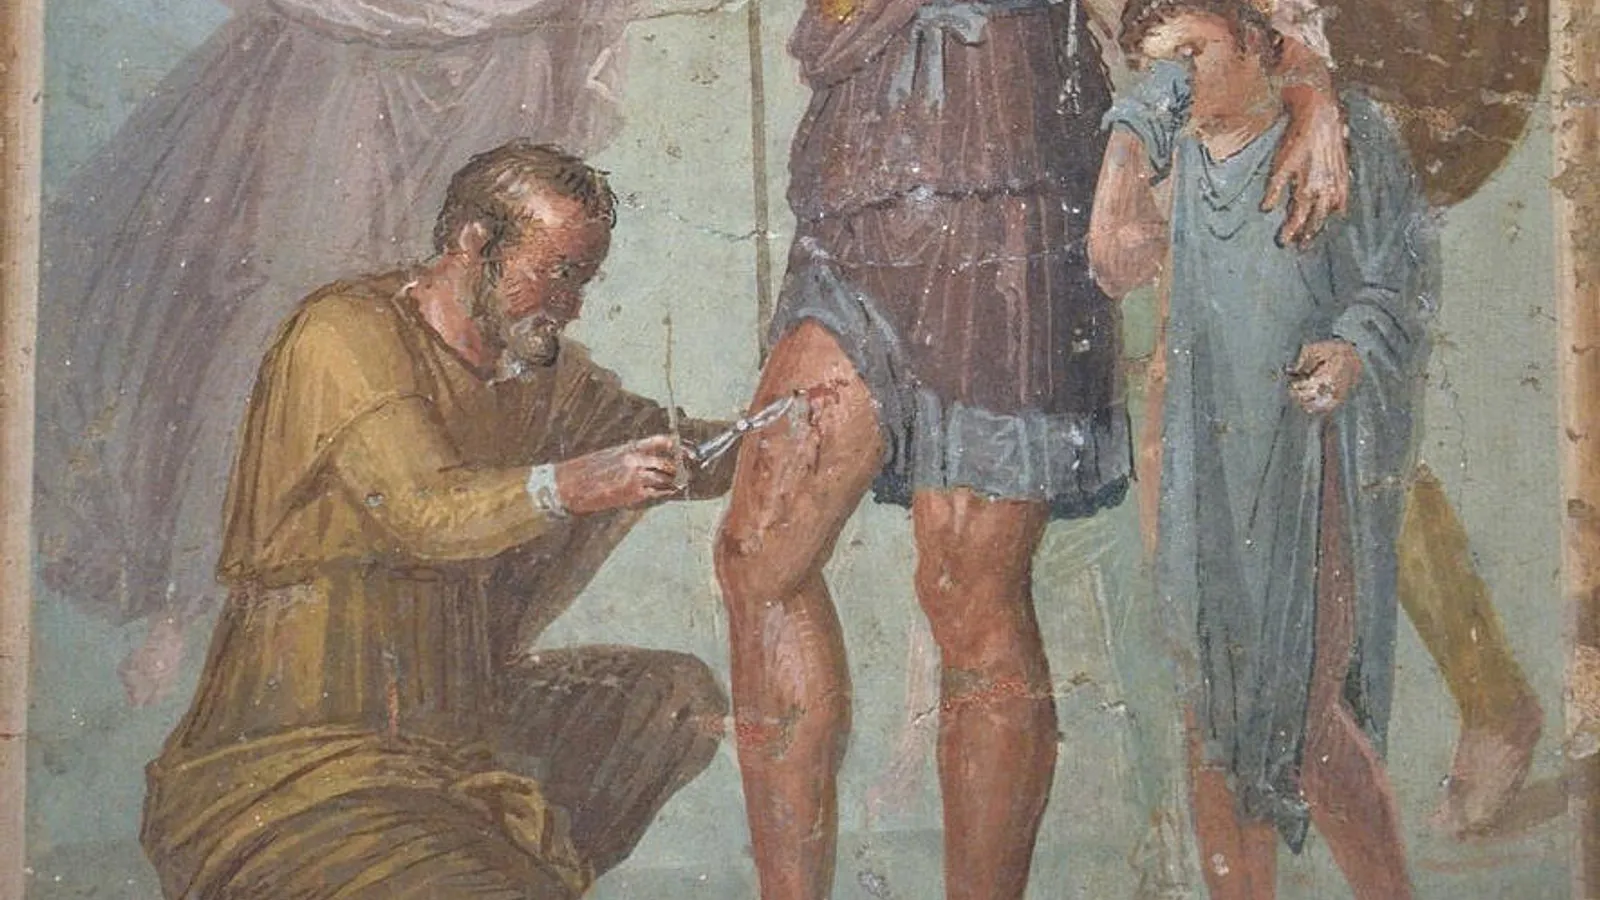 لمحة عن الرعاية الصحية في الإمبراطورية الرومانية